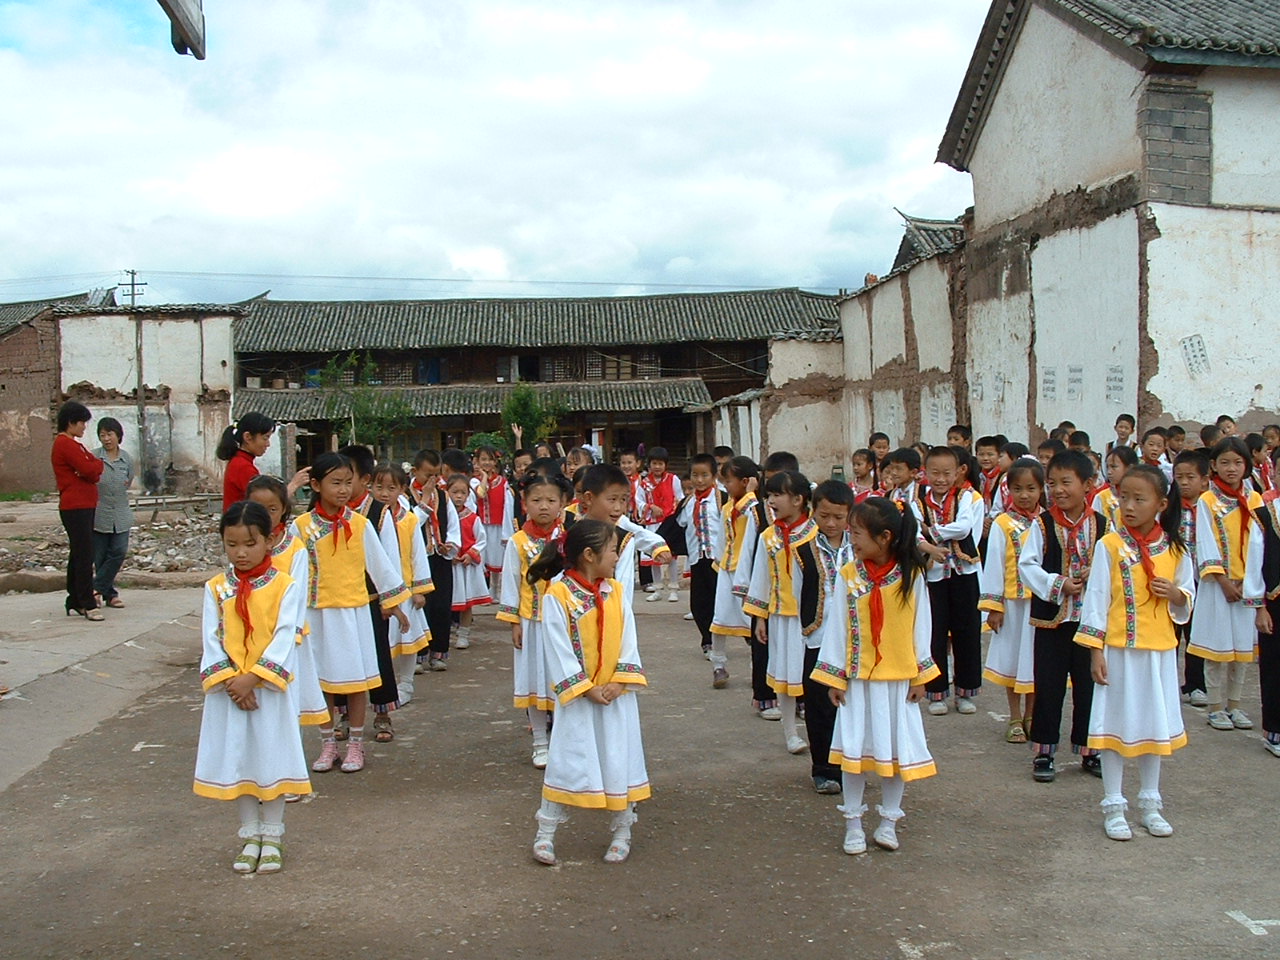 Primary schoolchildren prepare to dance